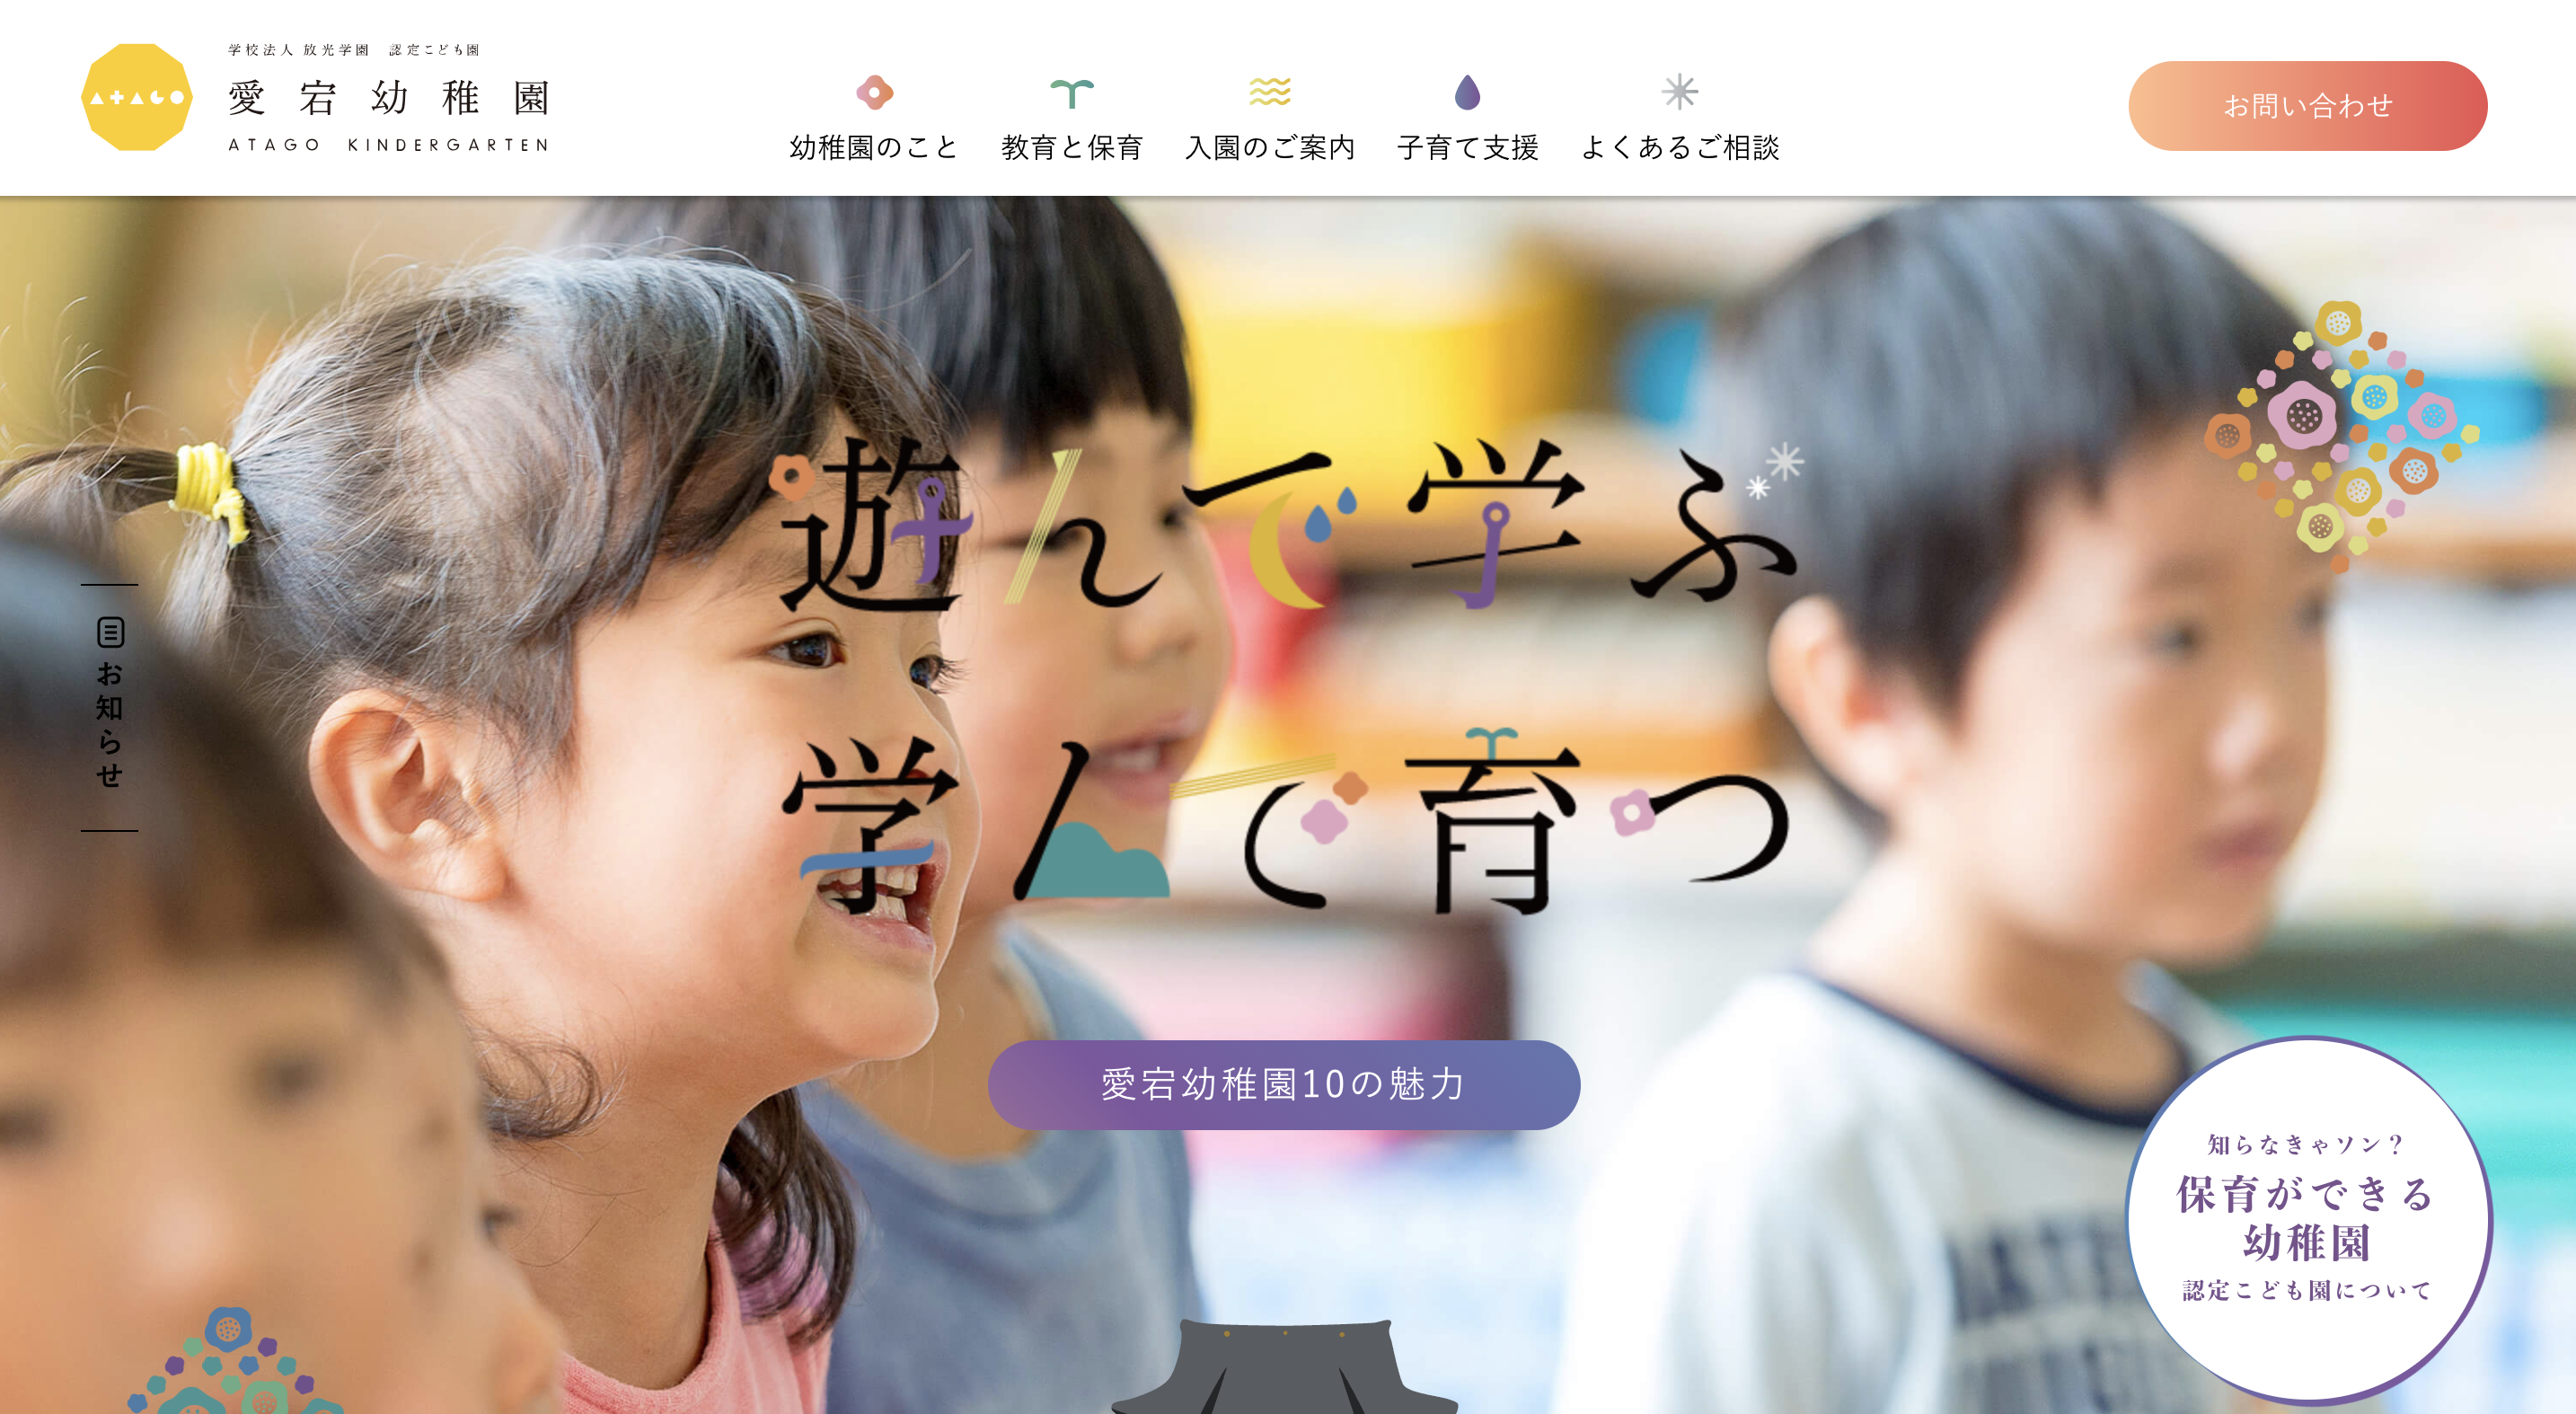 子供向けのホームページを制作する際の５つのポイント 名古屋のホームページ制作 Web集客 株式会社オンカ